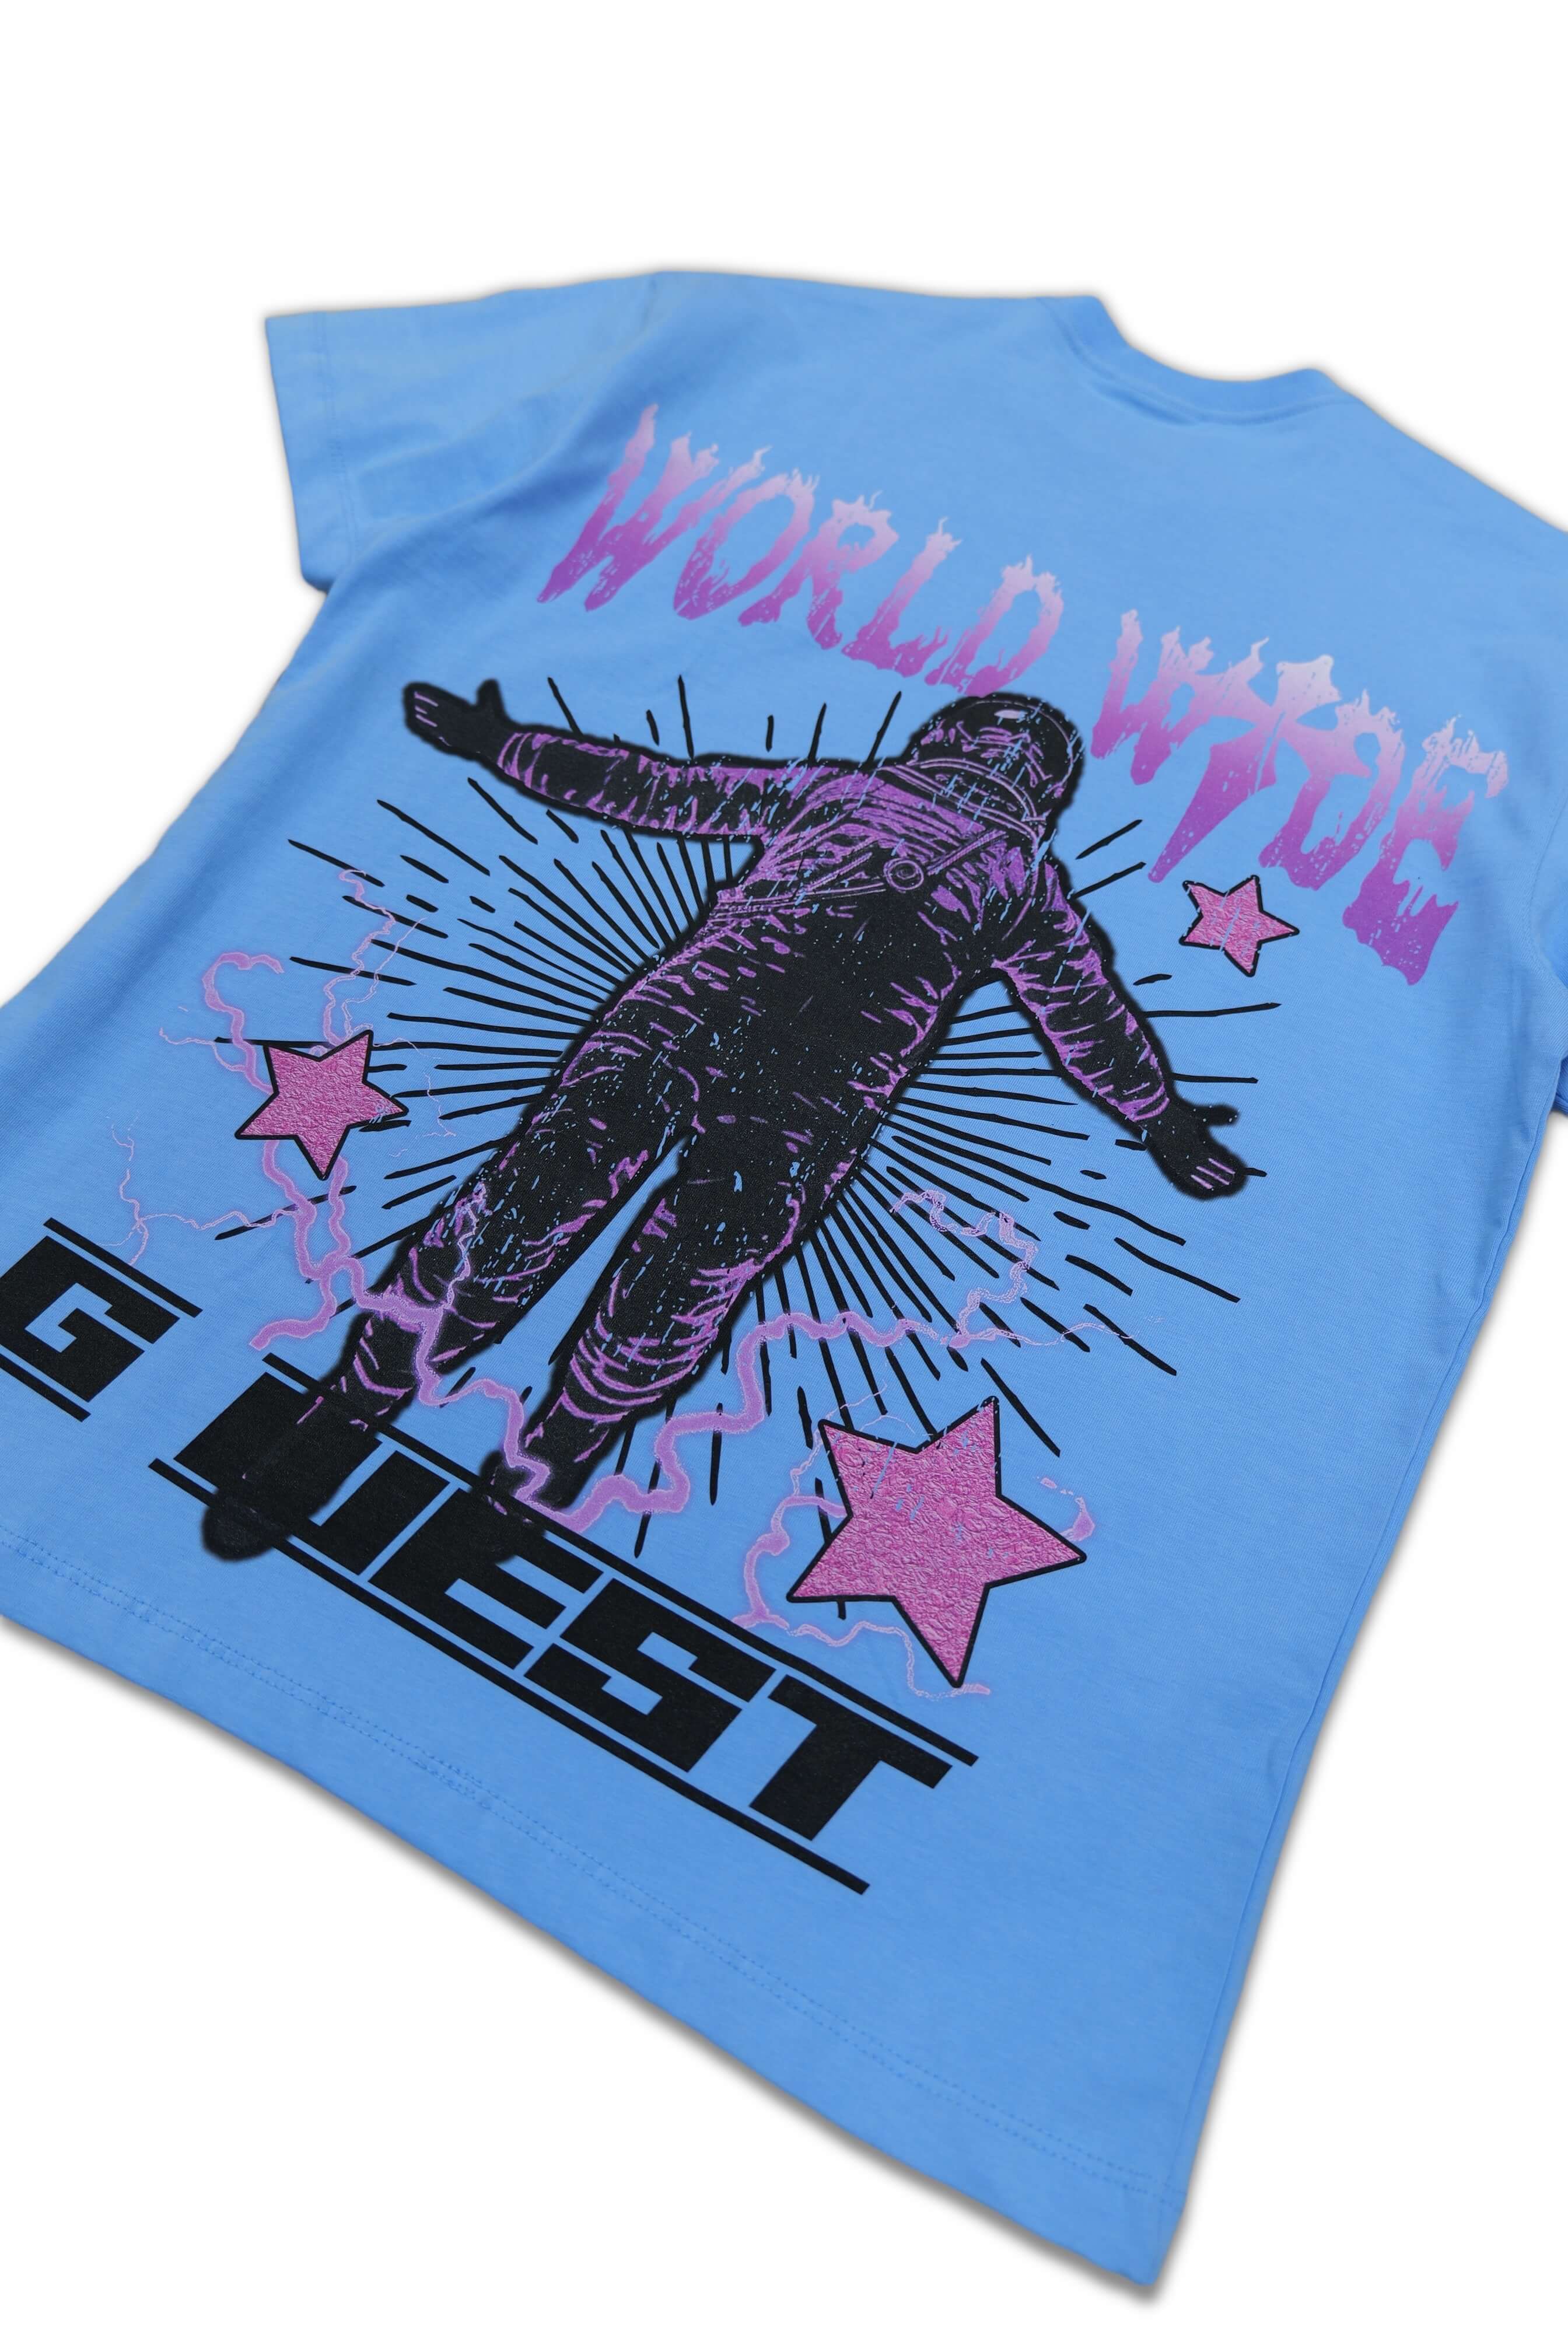 G West World Wide Star Astronaut T-shirt -University Blue